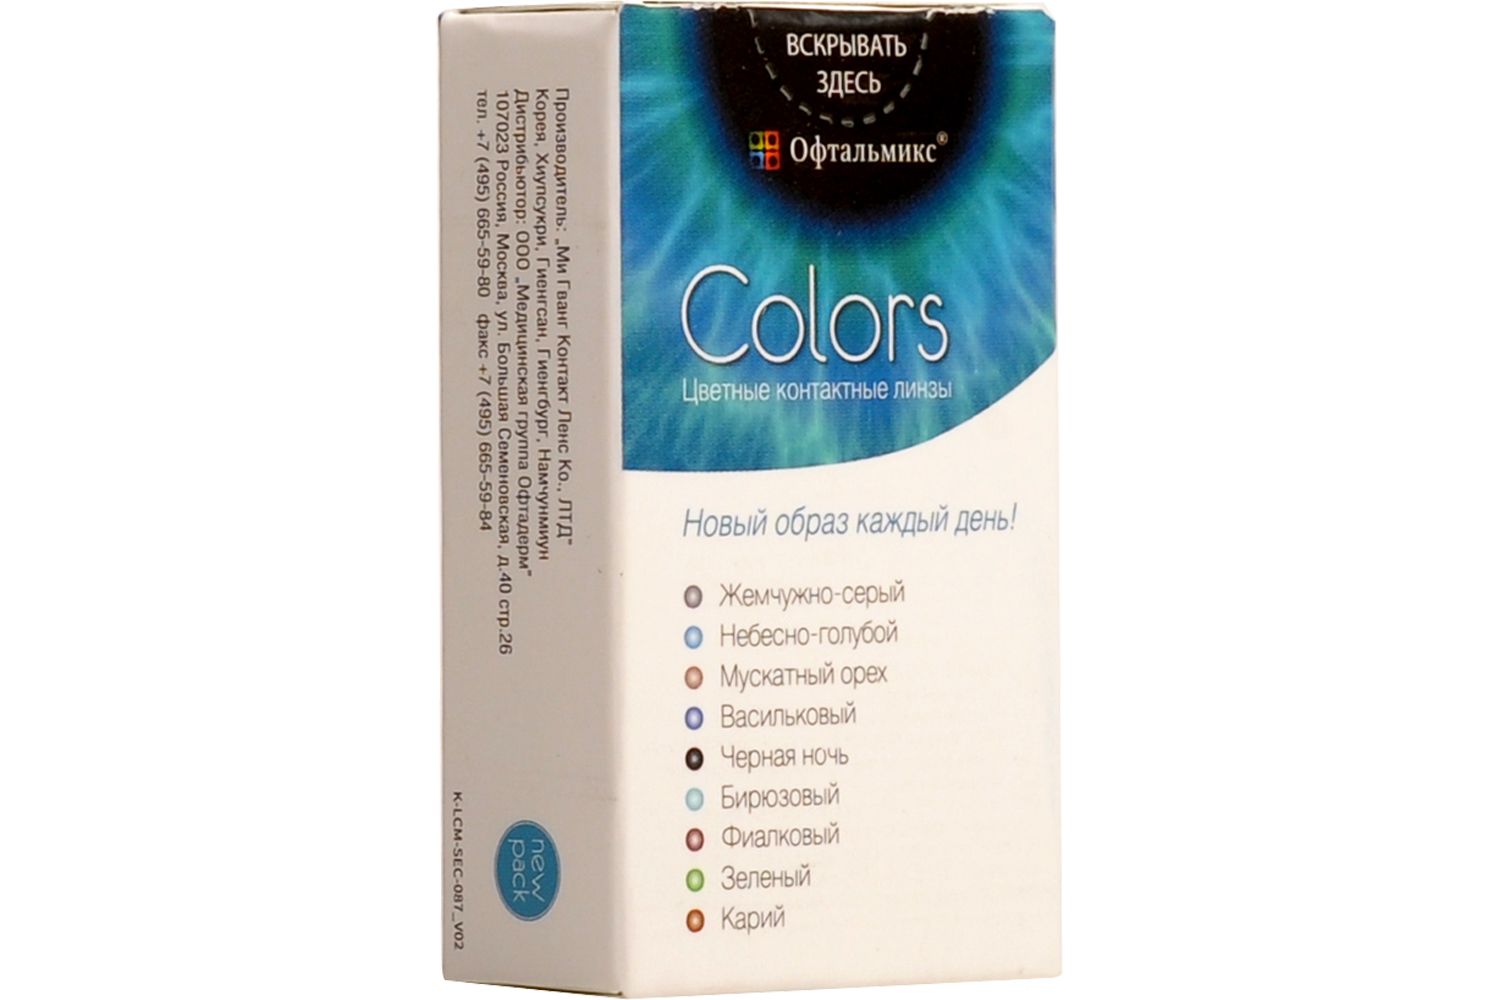 Купить Colors 2 линзы, Цветные контактные линзы Офтальмикс Colors, 2 шт. PWR -4, 00, R 8.6, Olive